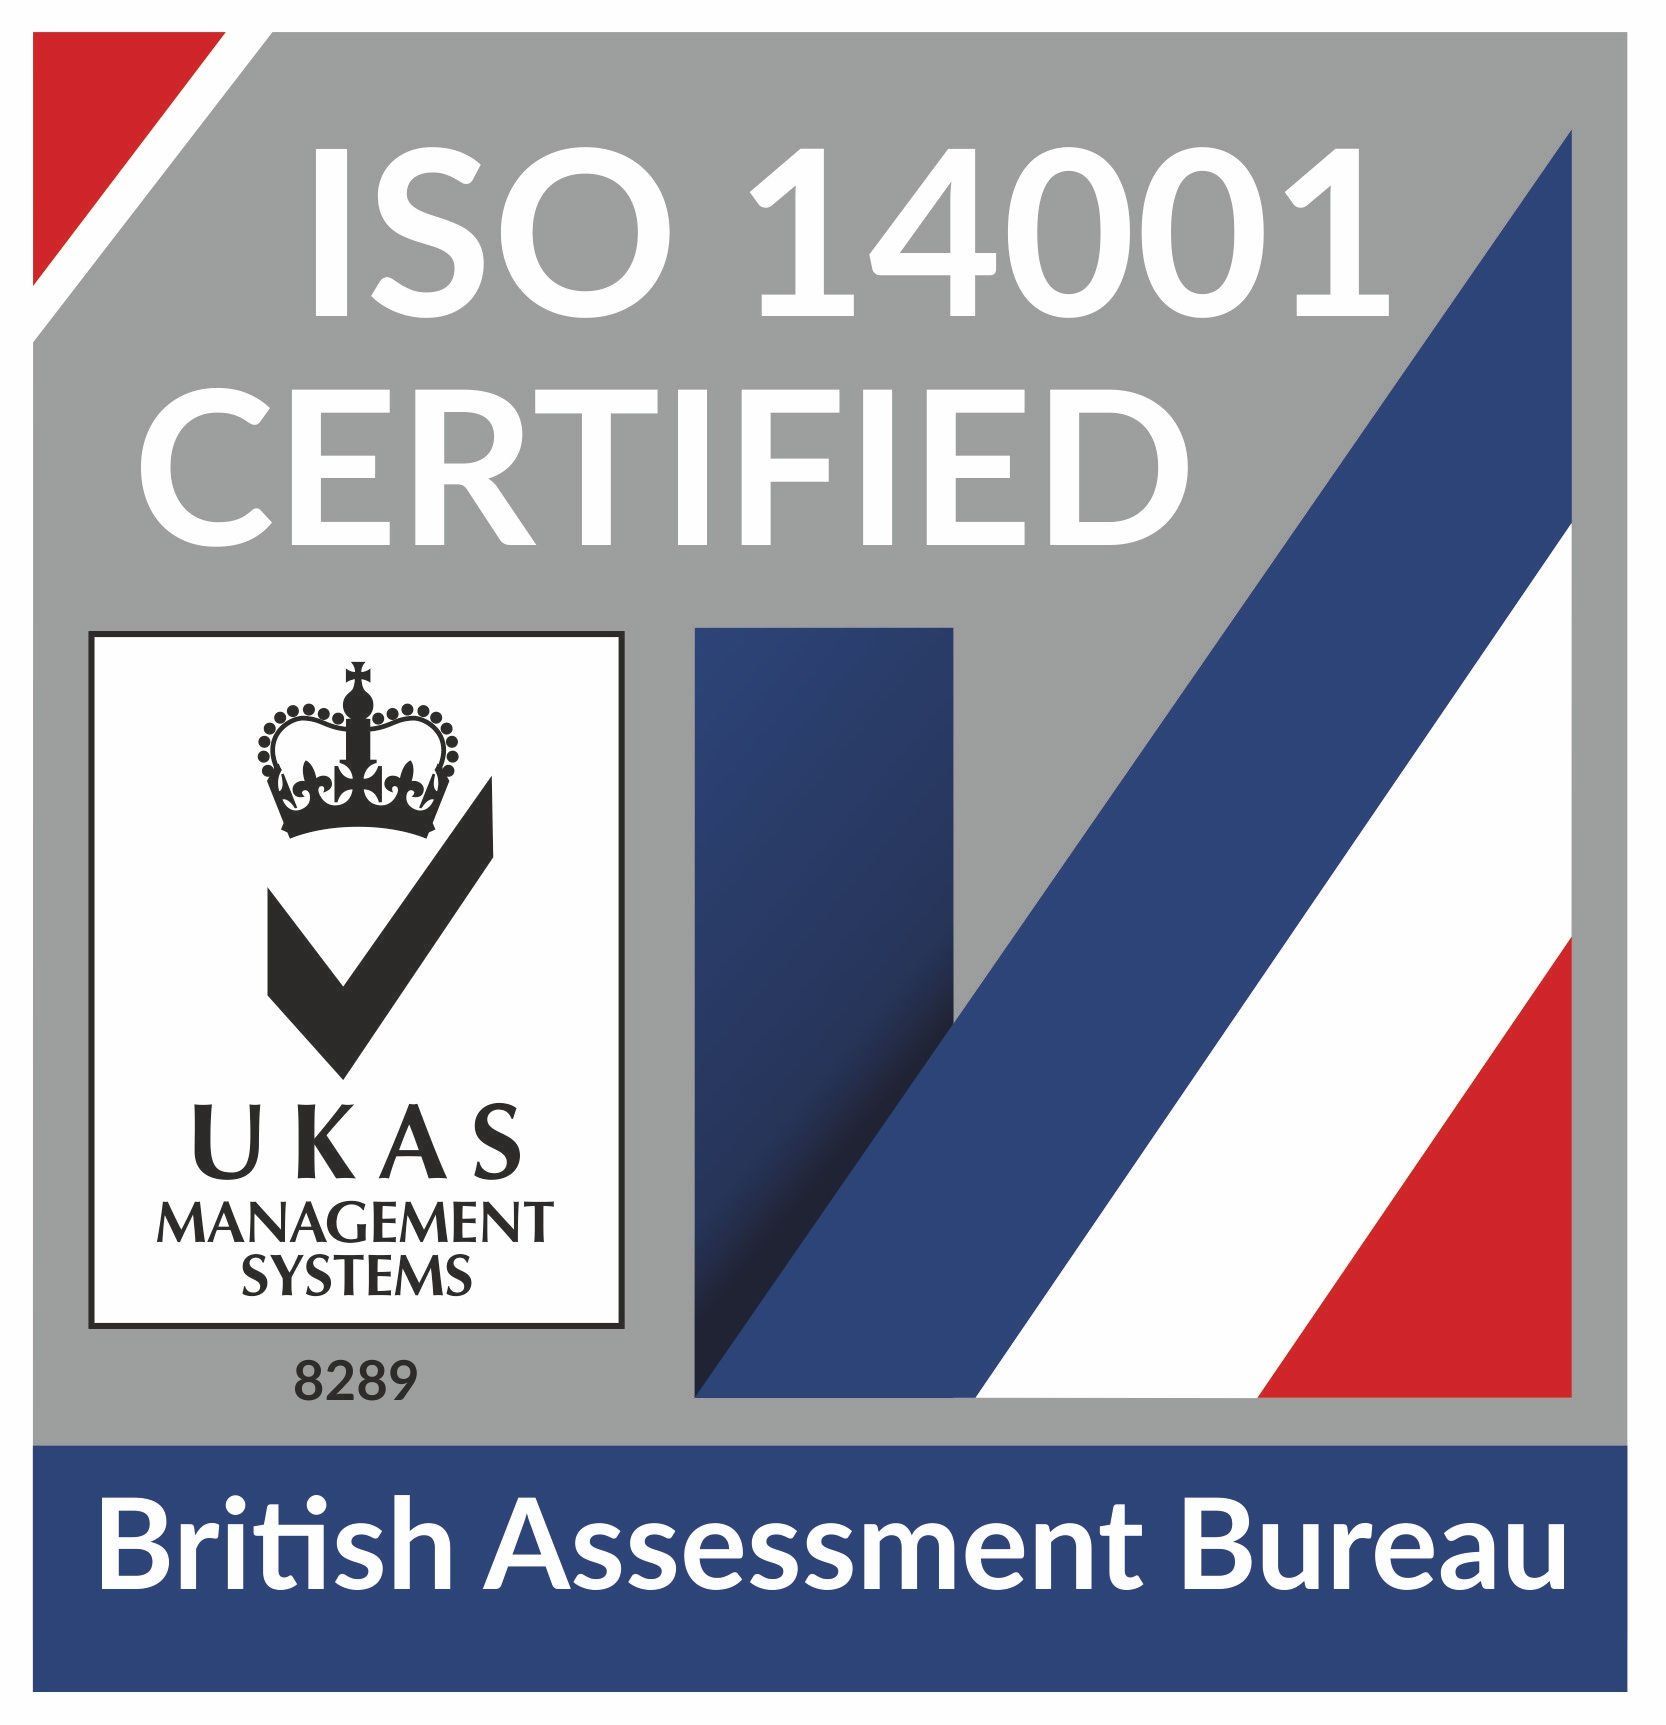 Aluminium Marine Consultants are ISO 14001 certified